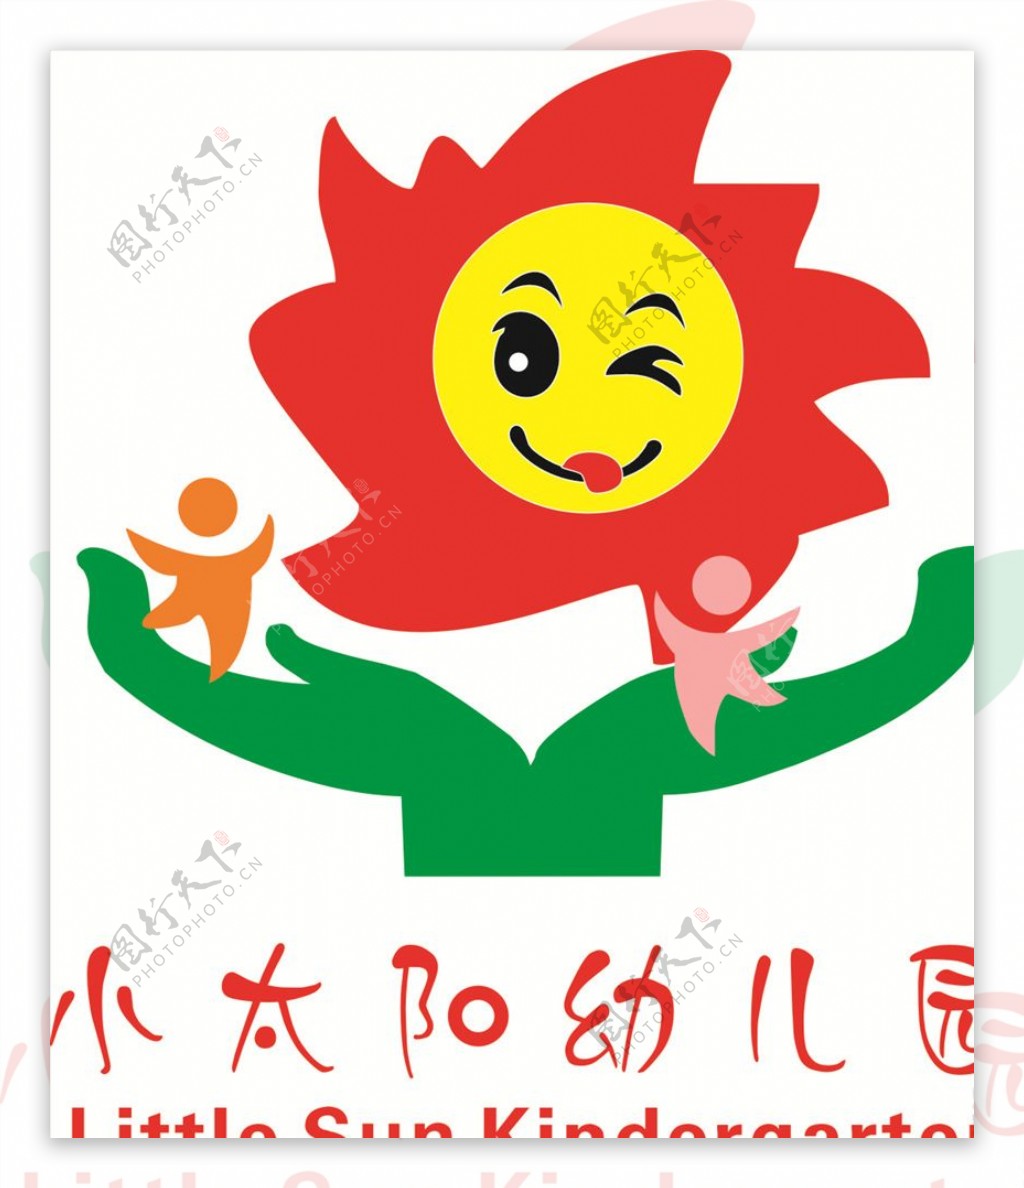 小太阳幼儿园logo